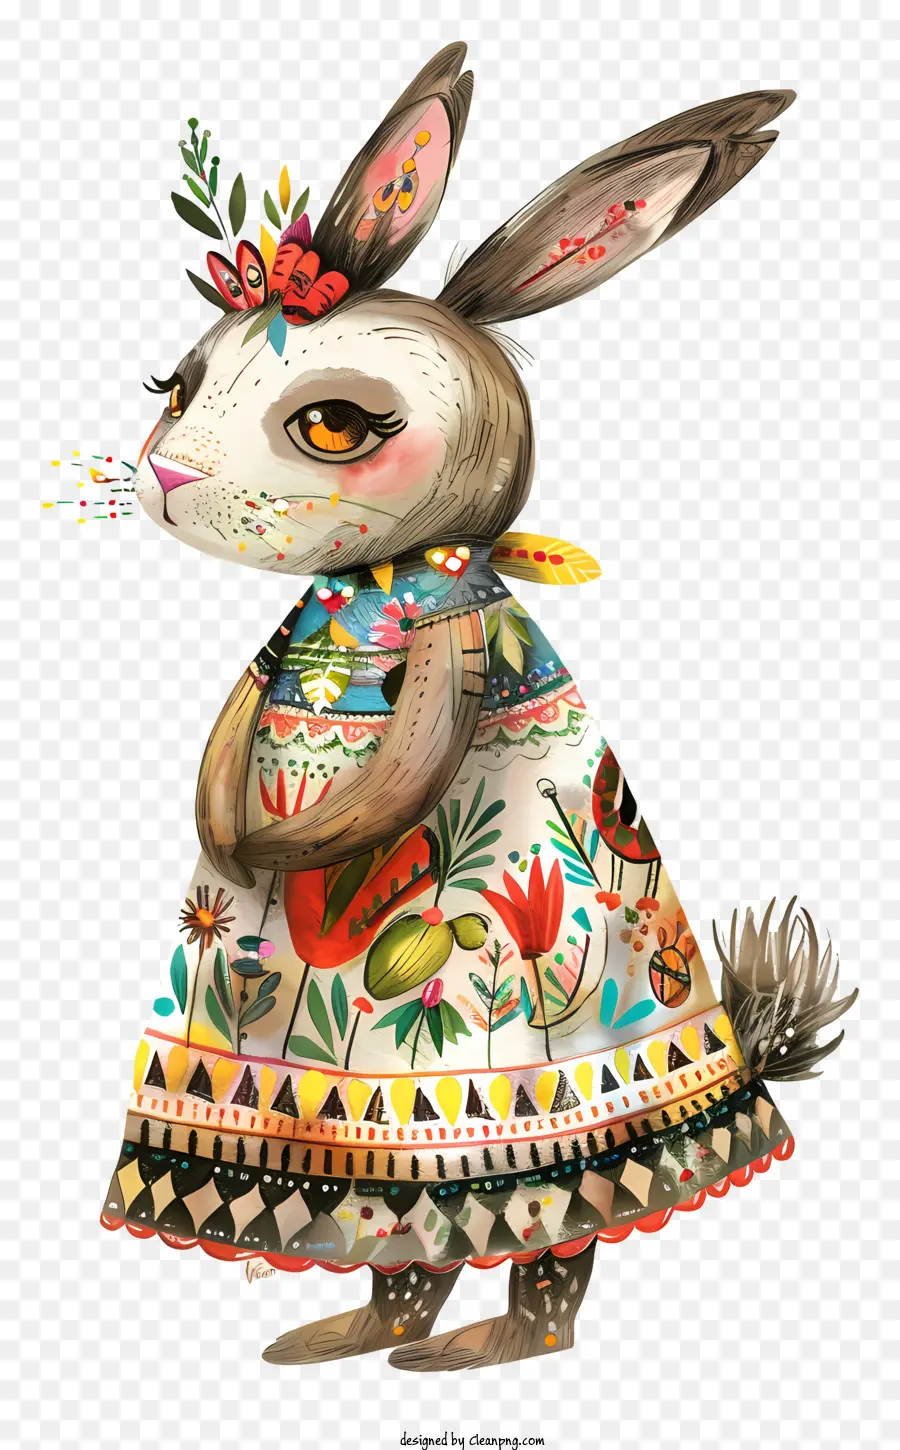 thỏ Phục Sinh - Nhân vật hoạt hình trong trang phục đầy màu sắc và hoa